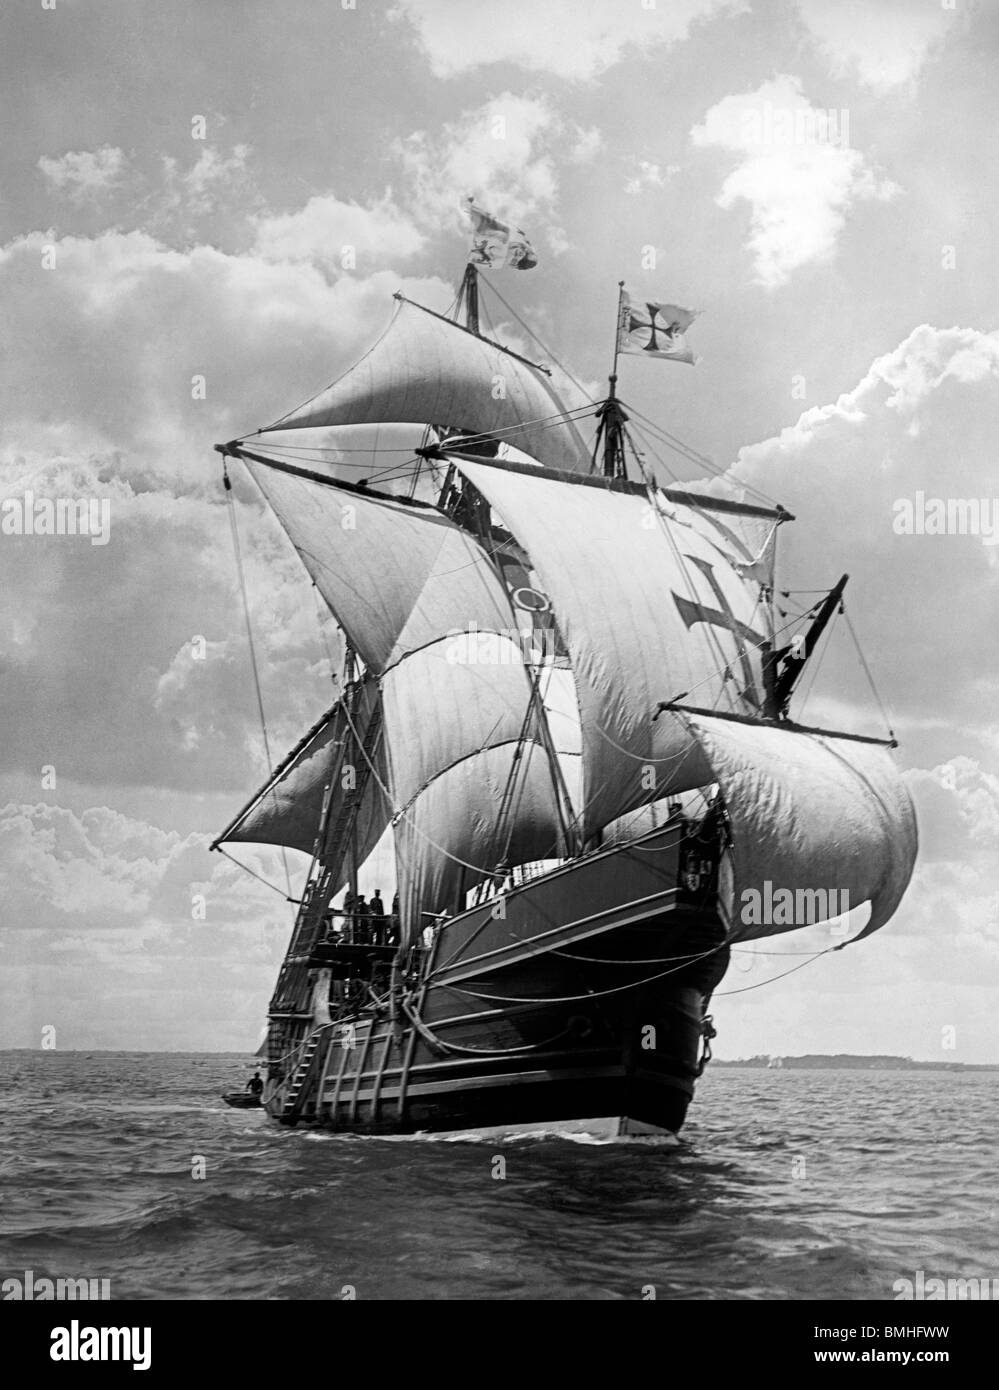 Spanische Karavelle Santa Maria - Replik des Columbus Schiff, das in die  neue Welt, ca. 1907 gesegelt Stockfotografie - Alamy